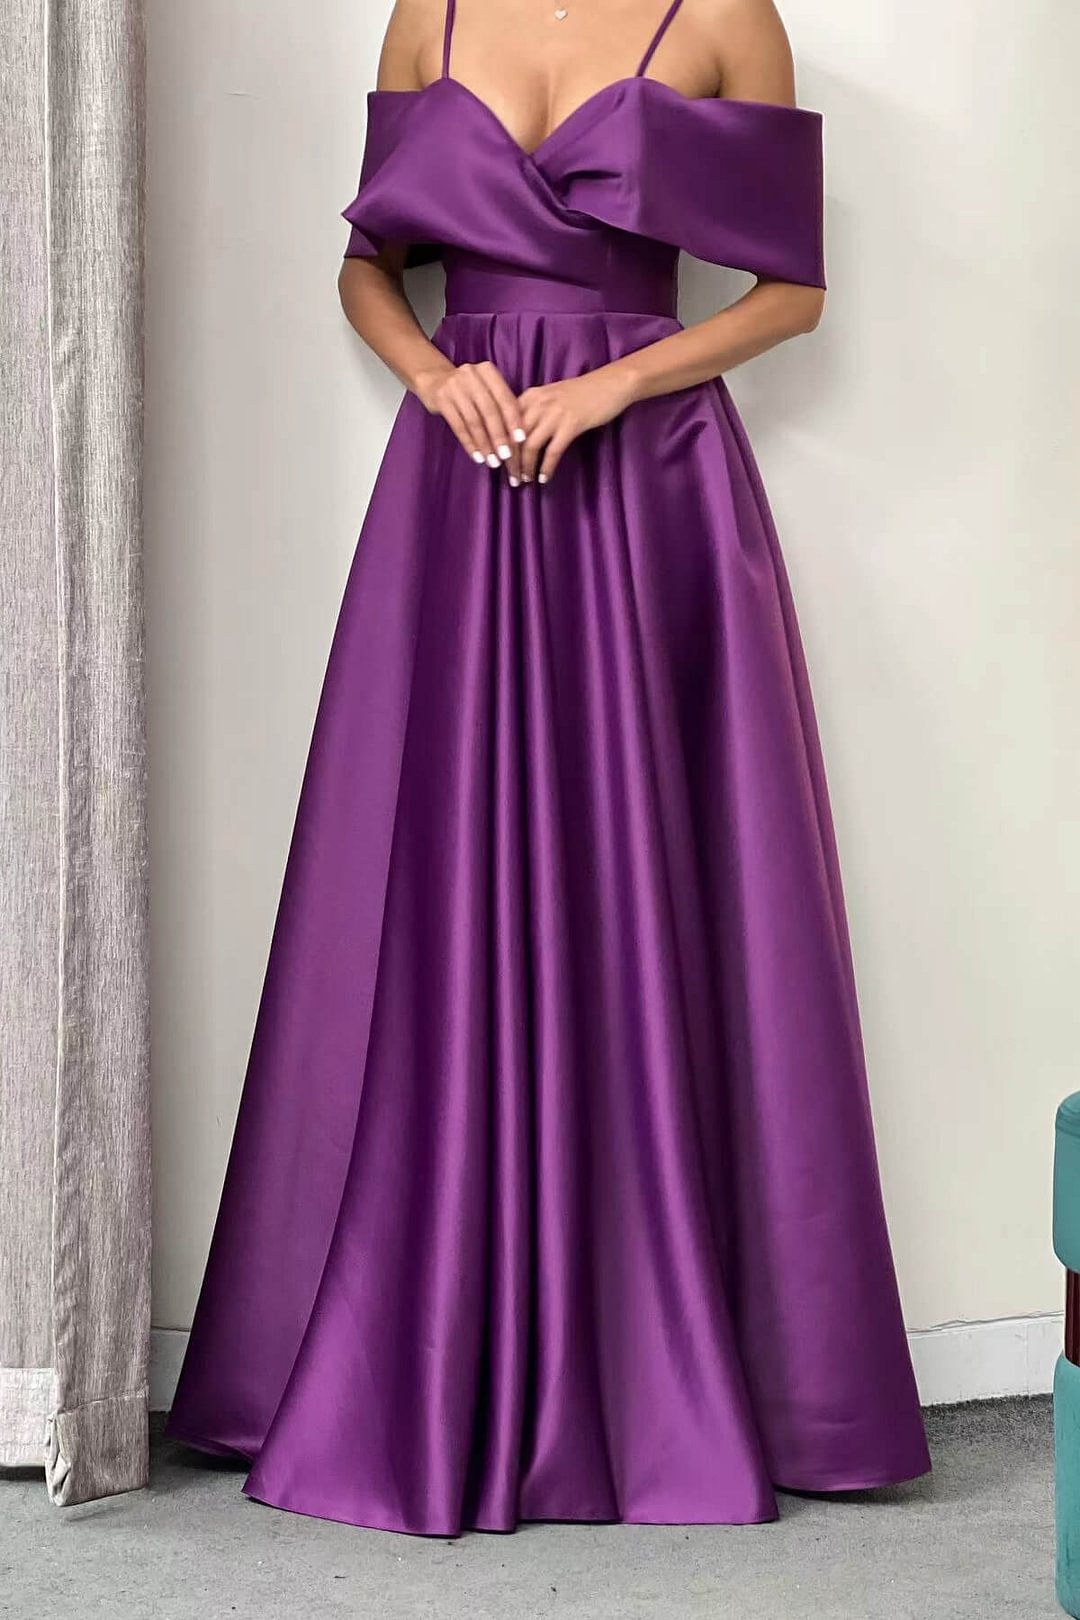 Violett Schulterfrei A-Linie Elegantes Ballkleid mit Taschen ED0131 Lunass